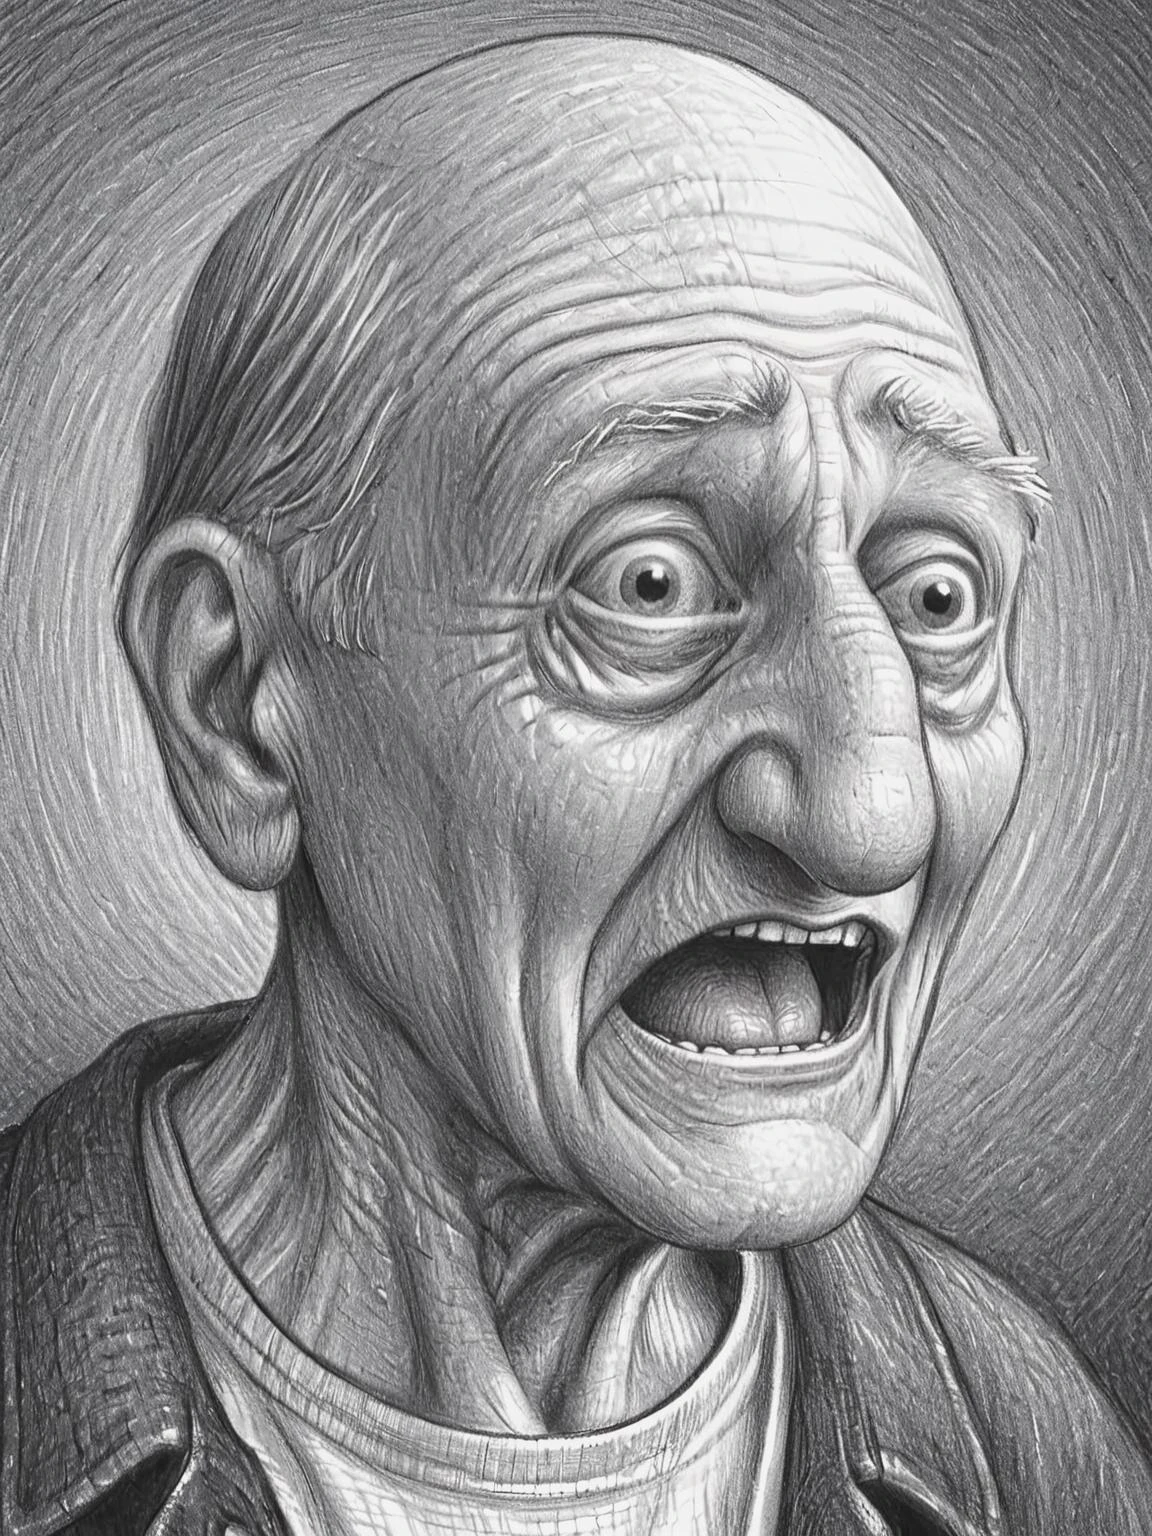 funny wrinkled old man face